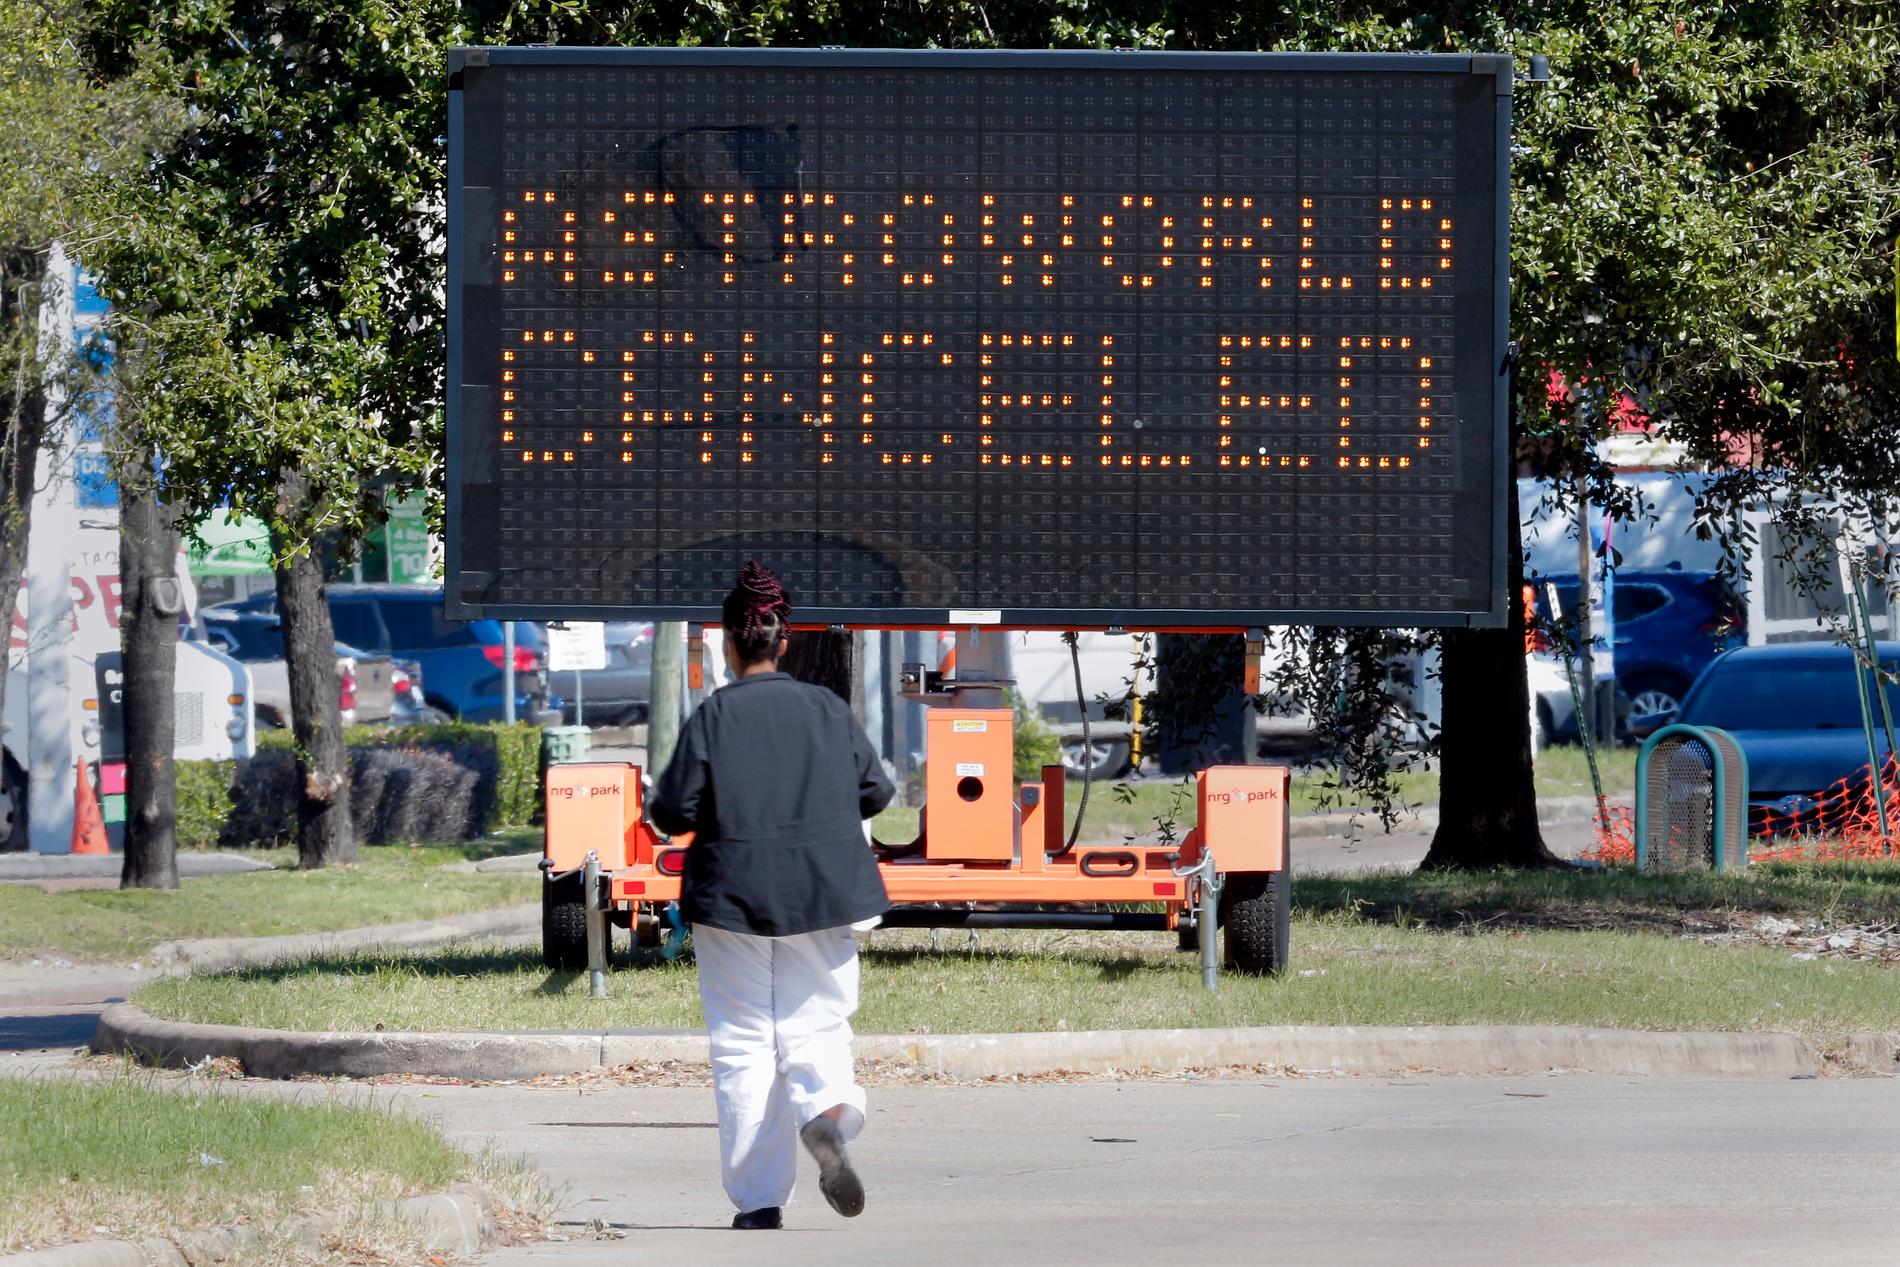 Totalt har nu nio personer dött efter tumultet som uppstod under Travis Scotts spelning på Astro World i Houston. Resten av festivalen ställdes in efter den tragiska händelsen.